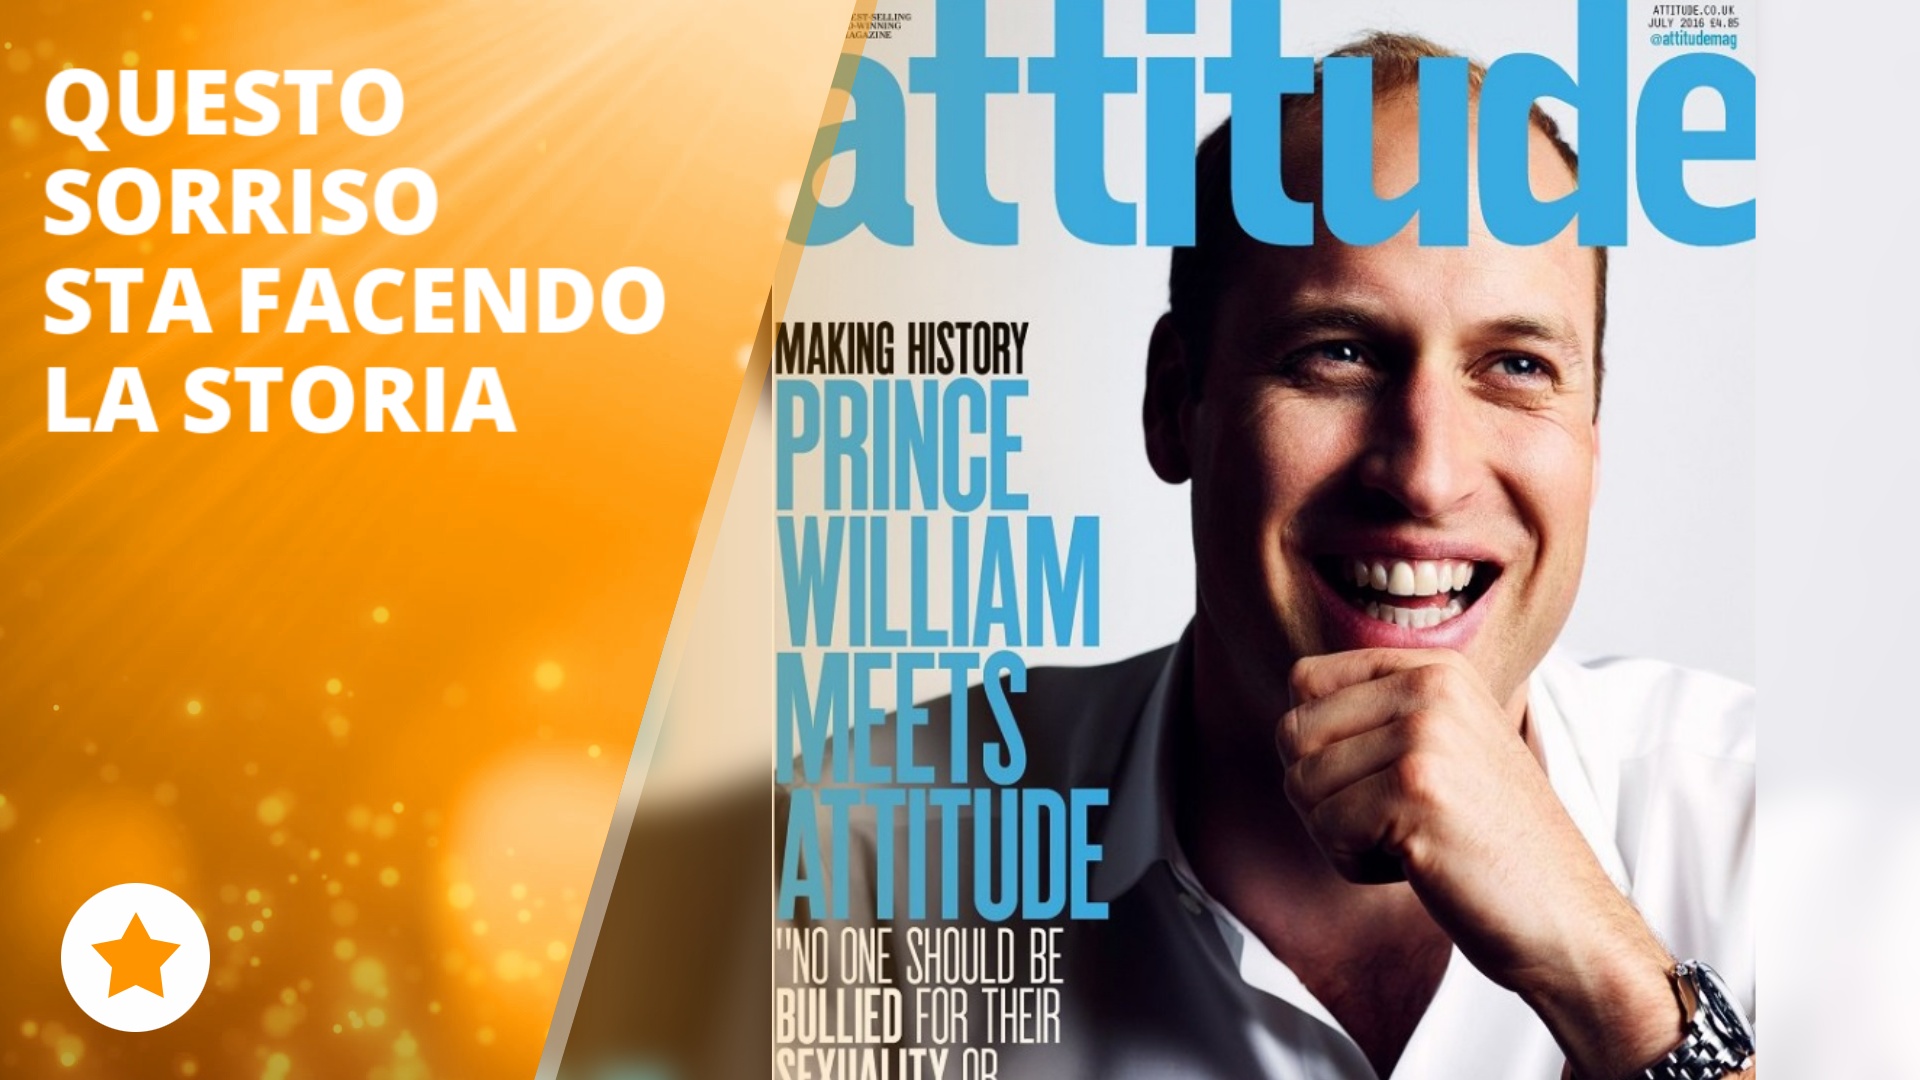 Il Principe William in copertina su un magazine LGBT